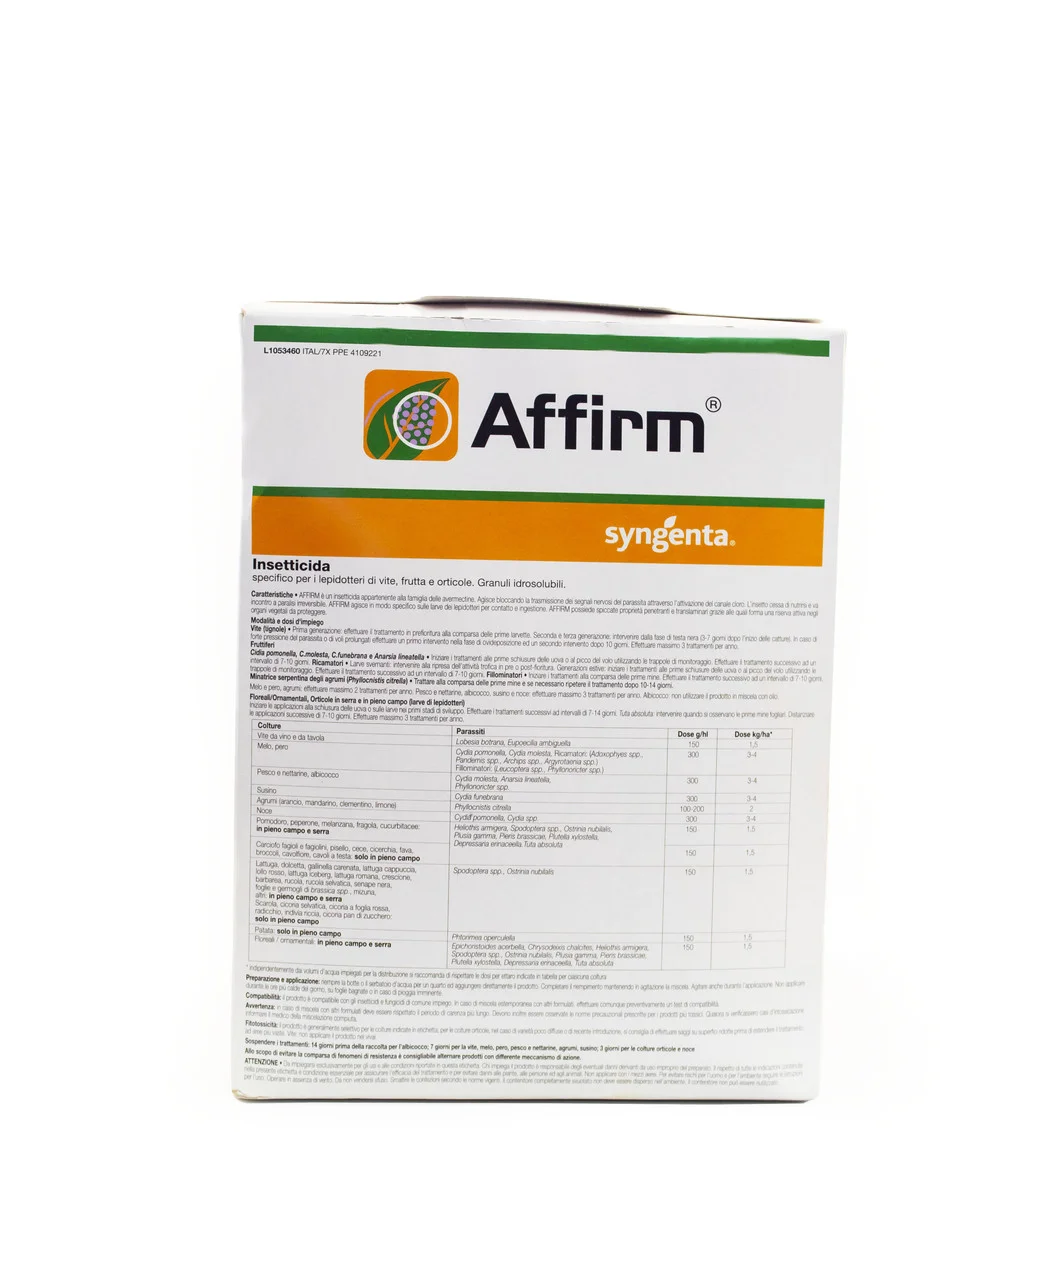 Аффирм EC (emamectine benzoate 0,95%) Syngenta 1 кг